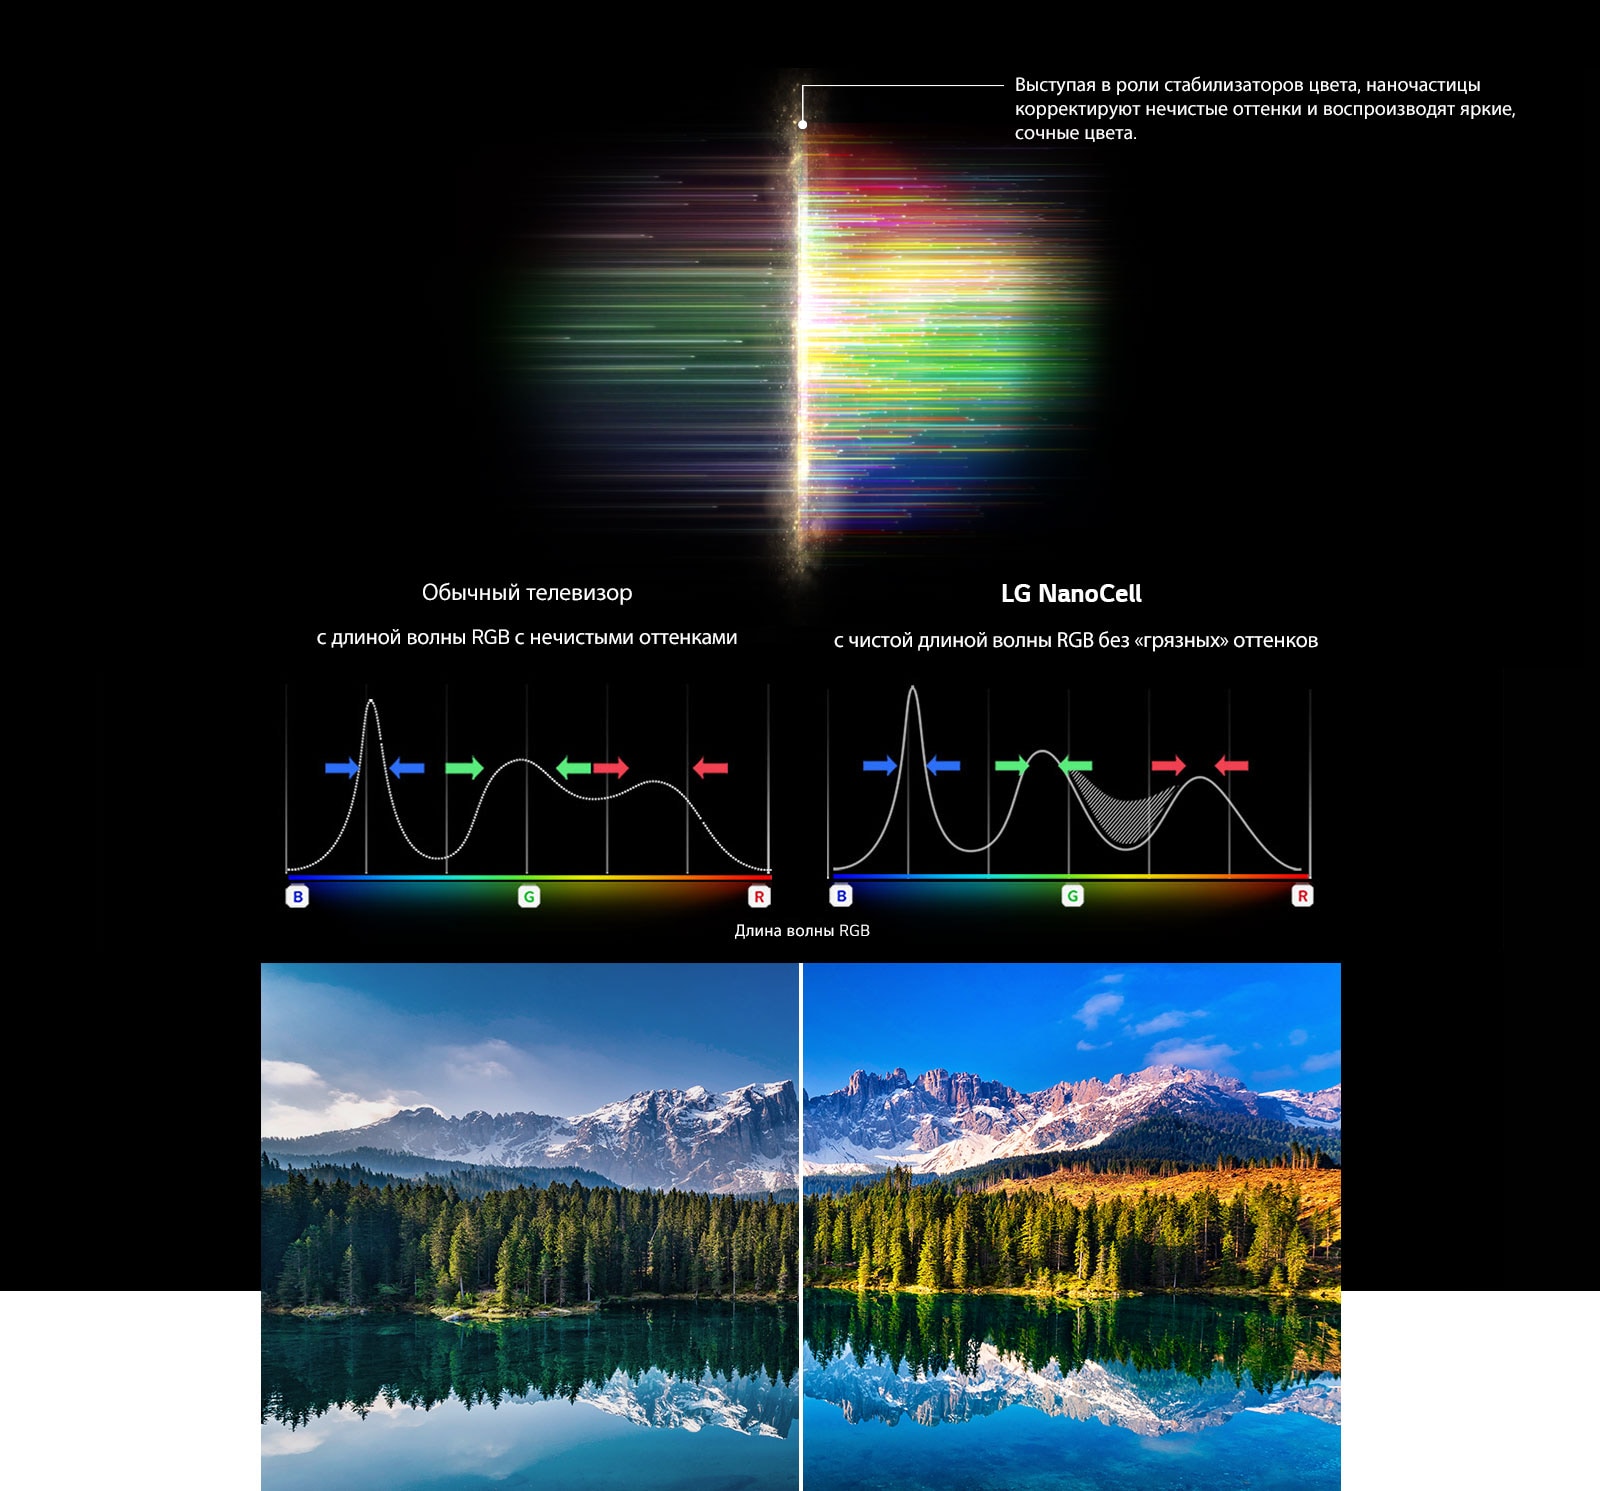 Диаграмма RGB-спектра, показывающая, как отфильтрованы тусклые цвета, и картинки, сравнивающие чистоту цвета между обычным телевизором и NanoCell Tech